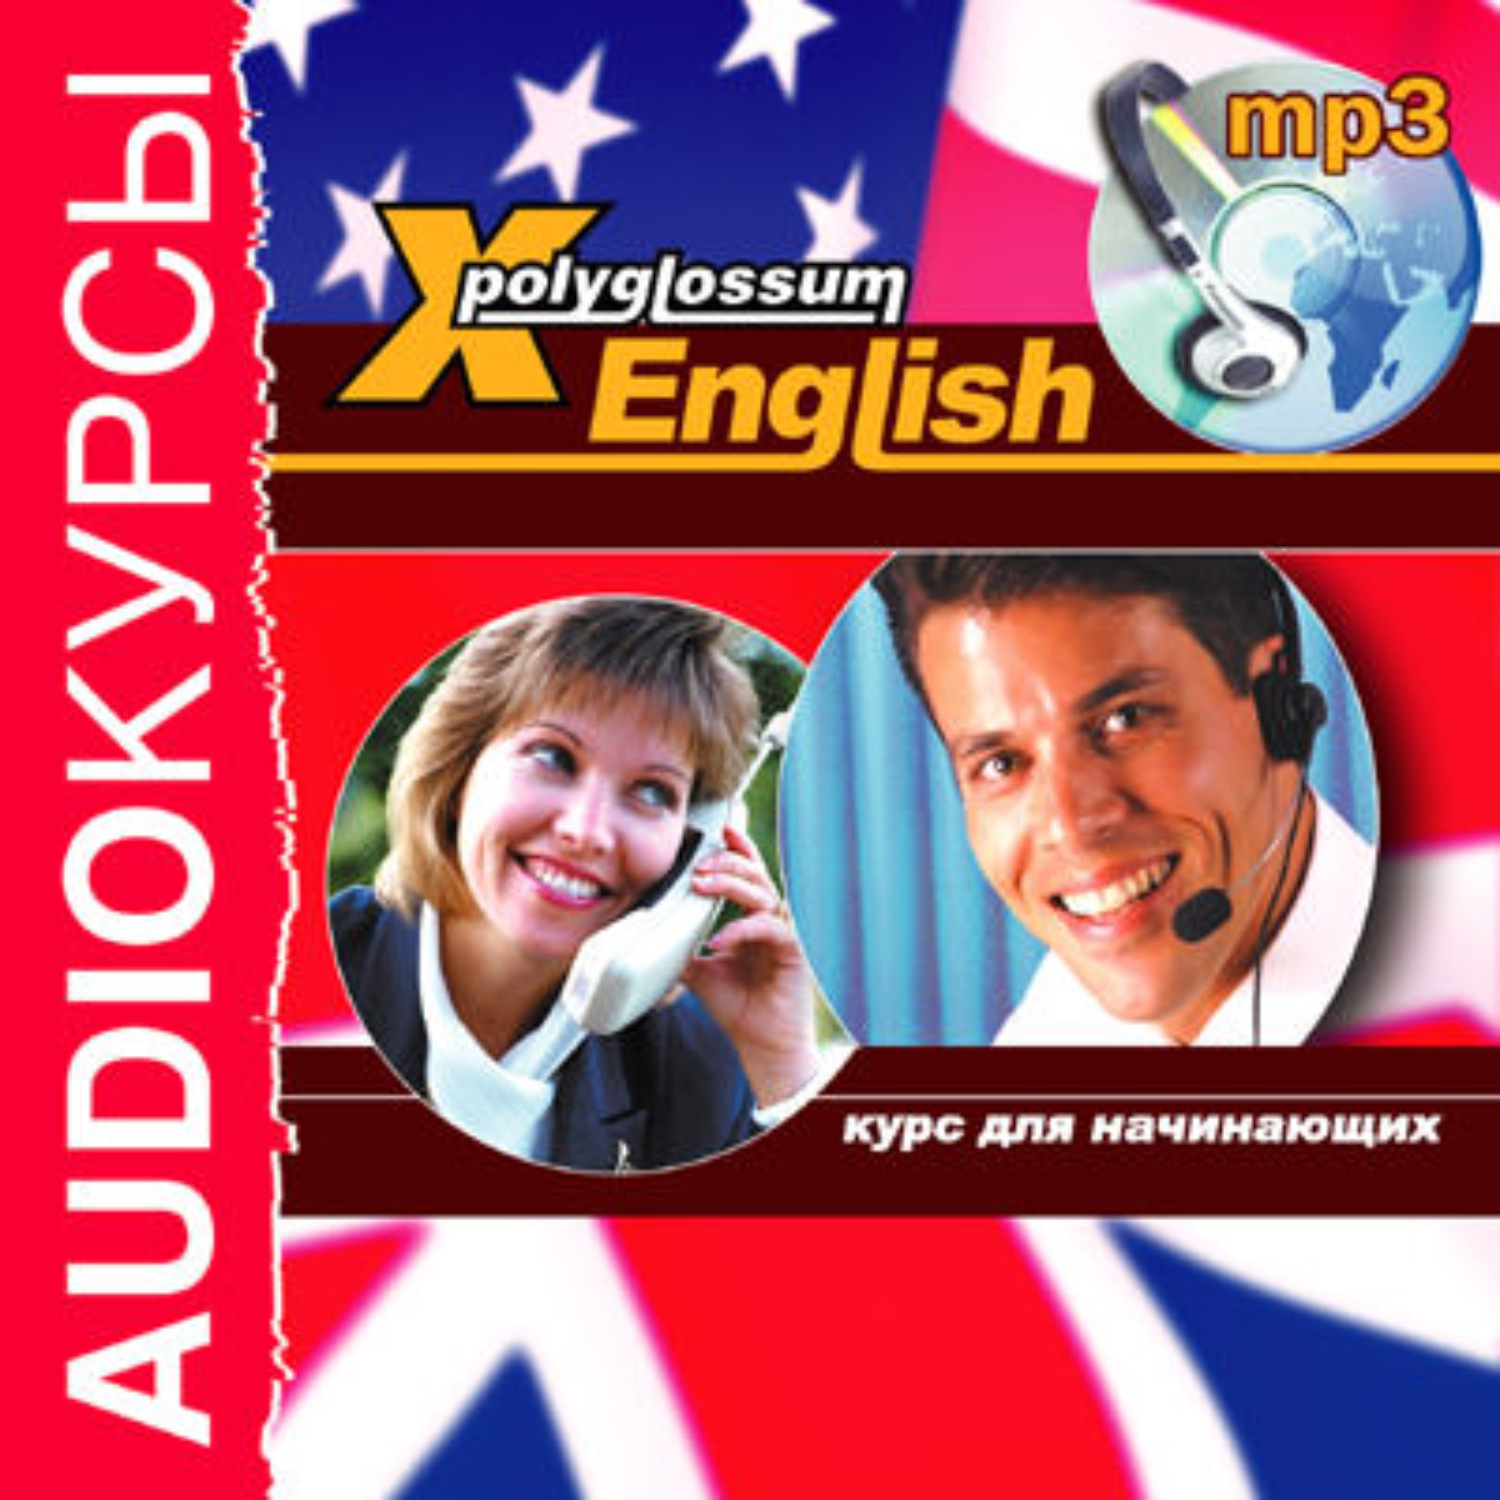 Курсы английского аудио. Аудиокурс английского для начинающих. Аудиокниги на английском для начинающих. Книга x-Polyglossum English. X-Polyglossum English читать.